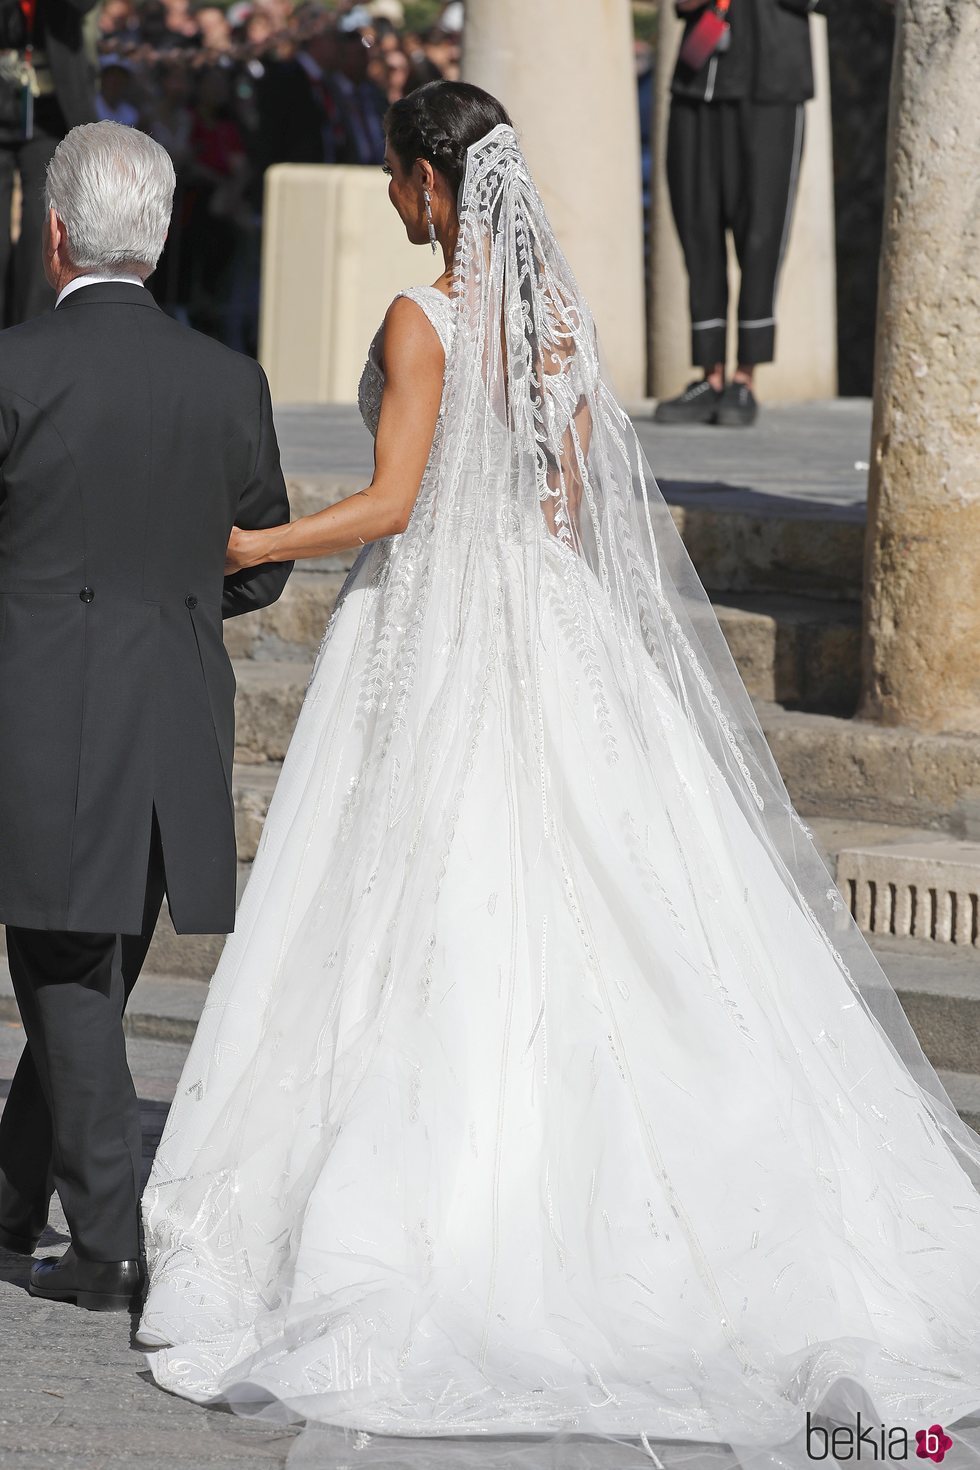 Parte de atrás del vestido de Pilar Rubio a su llegada a la Catedral de Sevilla para casarse con Sergio Ramos